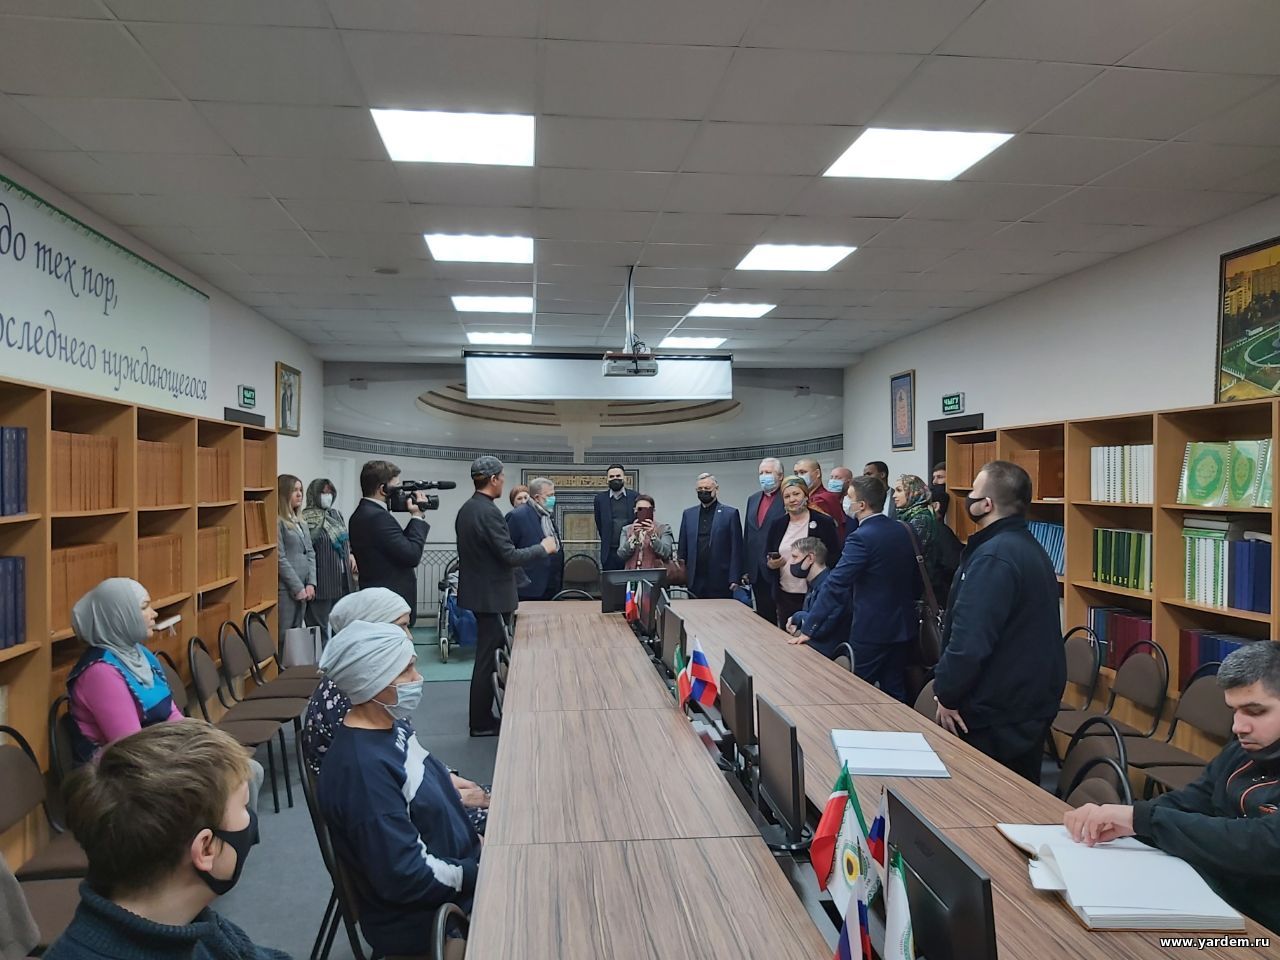 Представители Общественной палаты России посетили комплекс «Ярдэм». Общие новости